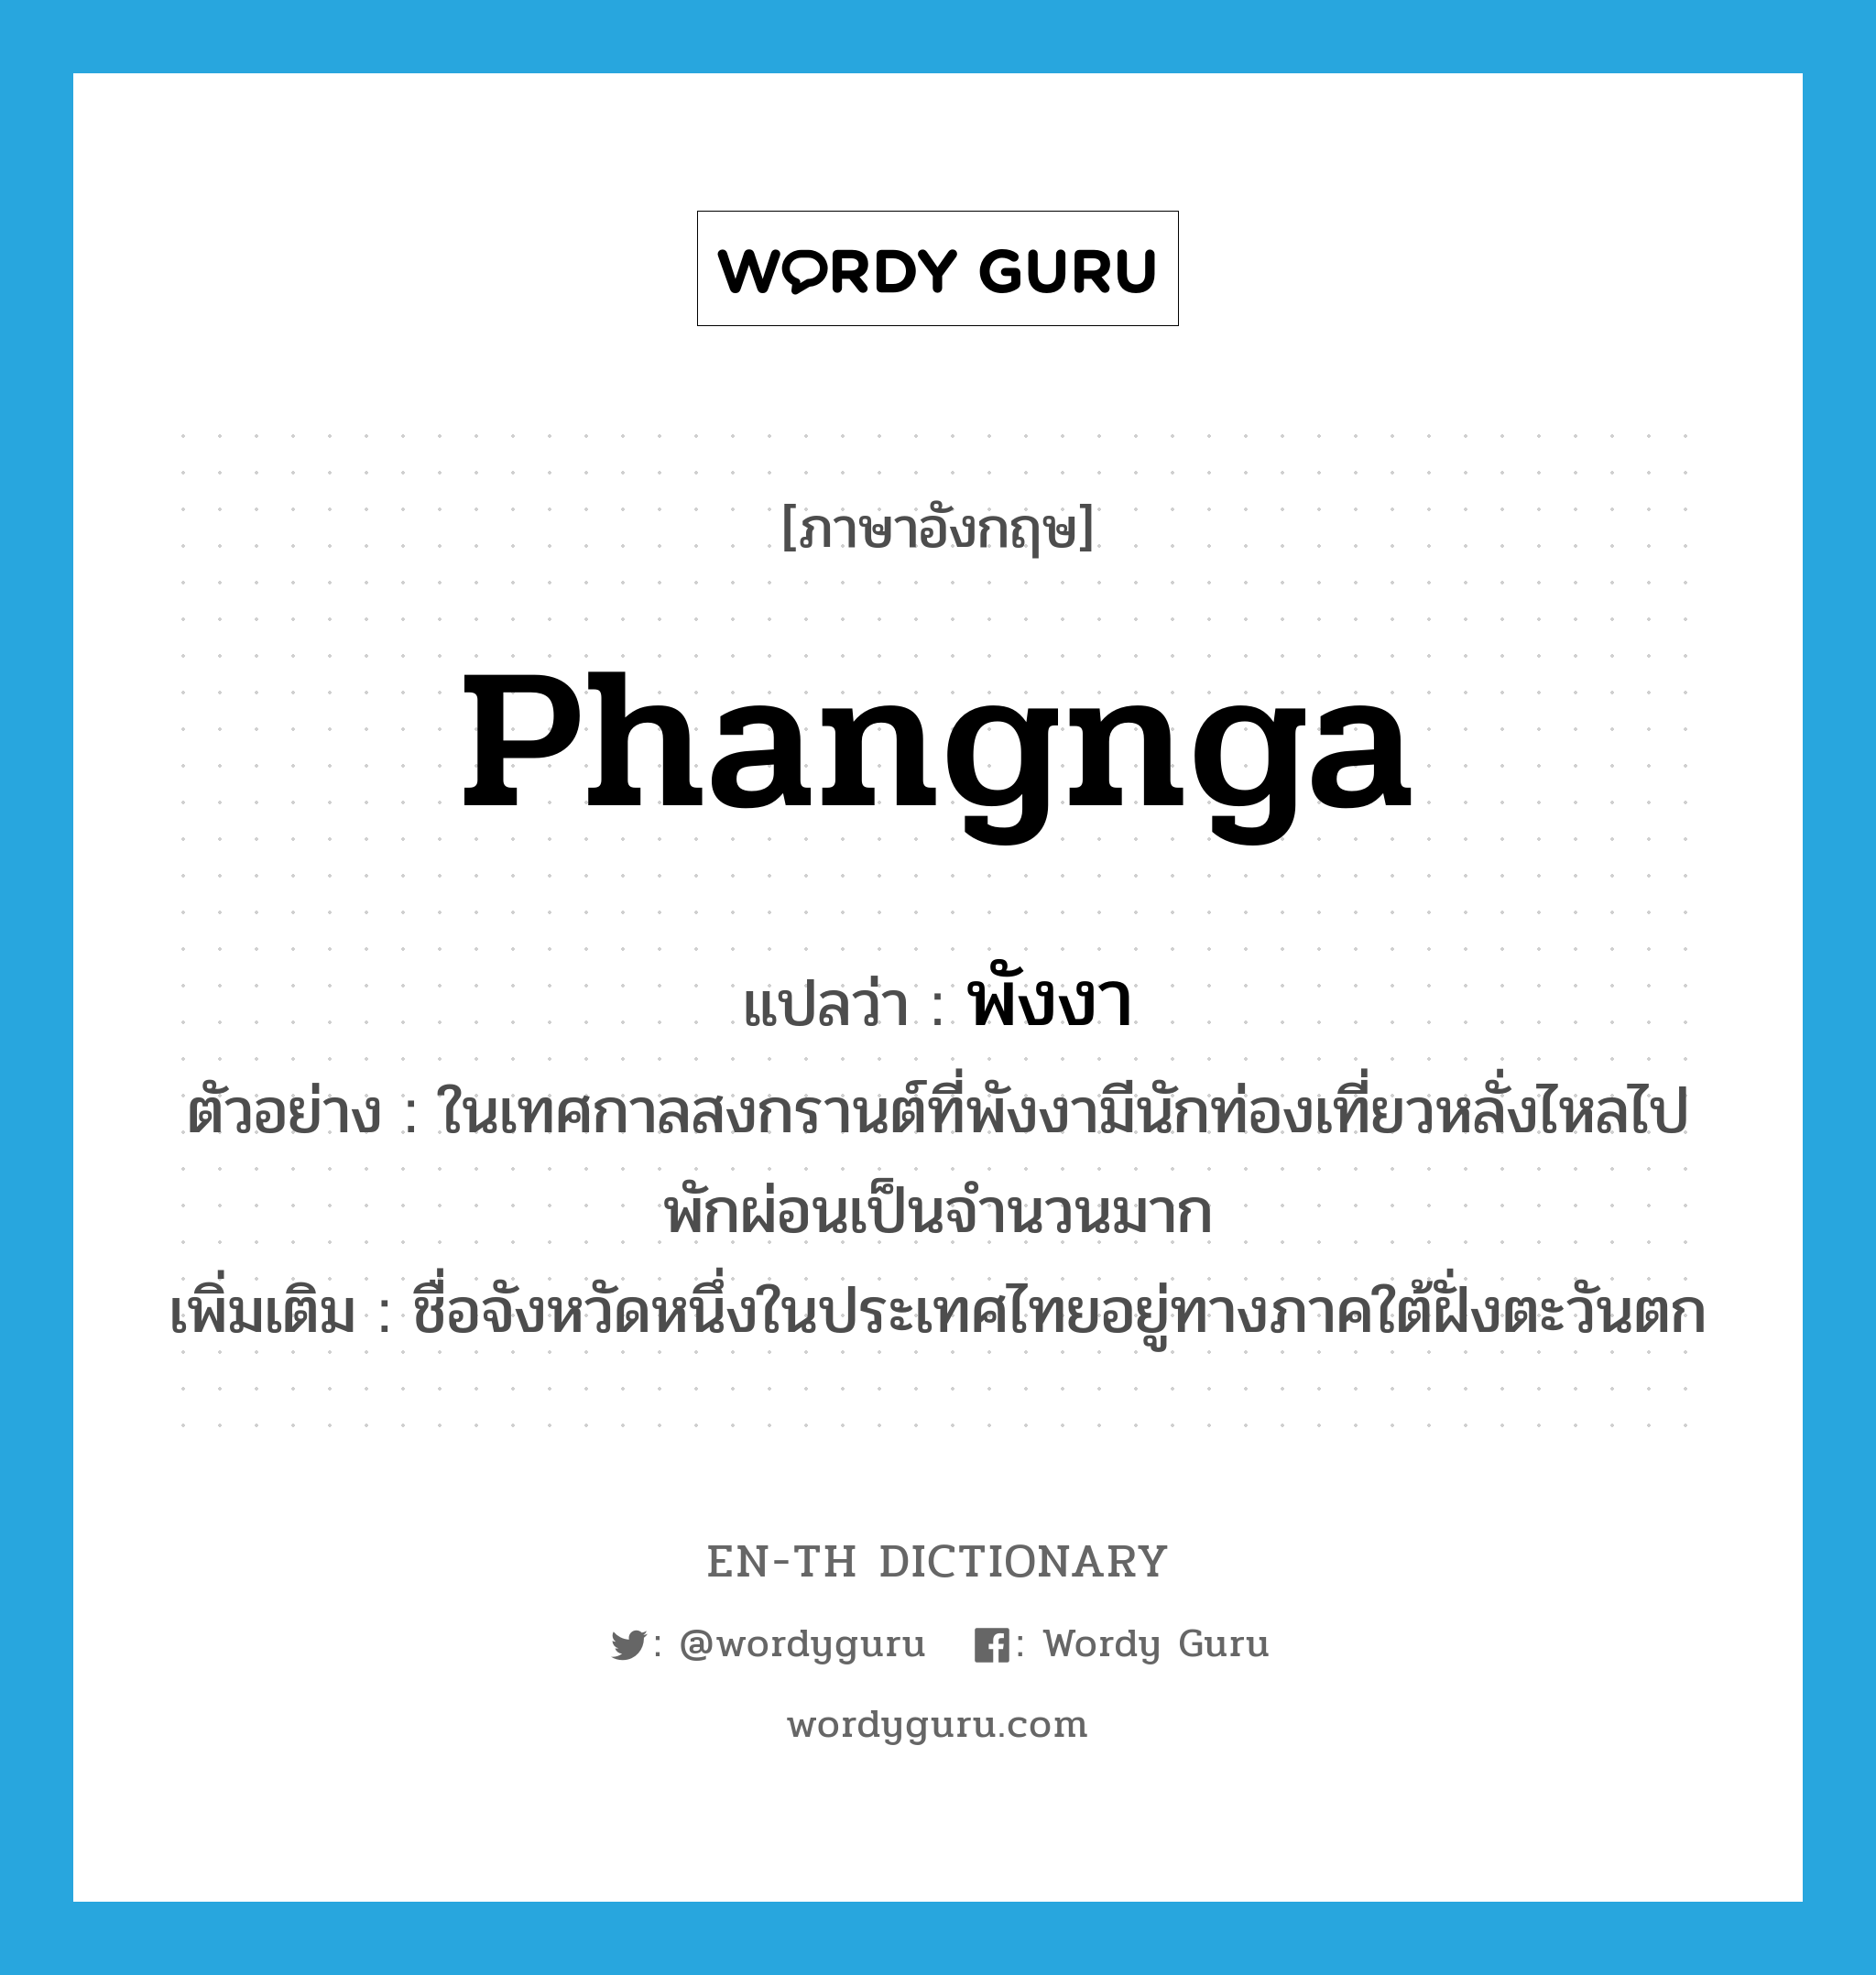 Phangnga แปลว่า?, คำศัพท์ภาษาอังกฤษ Phangnga แปลว่า พังงา ประเภท N ตัวอย่าง ในเทศกาลสงกรานต์ที่พังงามีนักท่องเที่ยวหลั่งไหลไปพักผ่อนเป็นจำนวนมาก เพิ่มเติม ชื่อจังหวัดหนึ่งในประเทศไทยอยู่ทางภาคใต้ฝั่งตะวันตก หมวด N